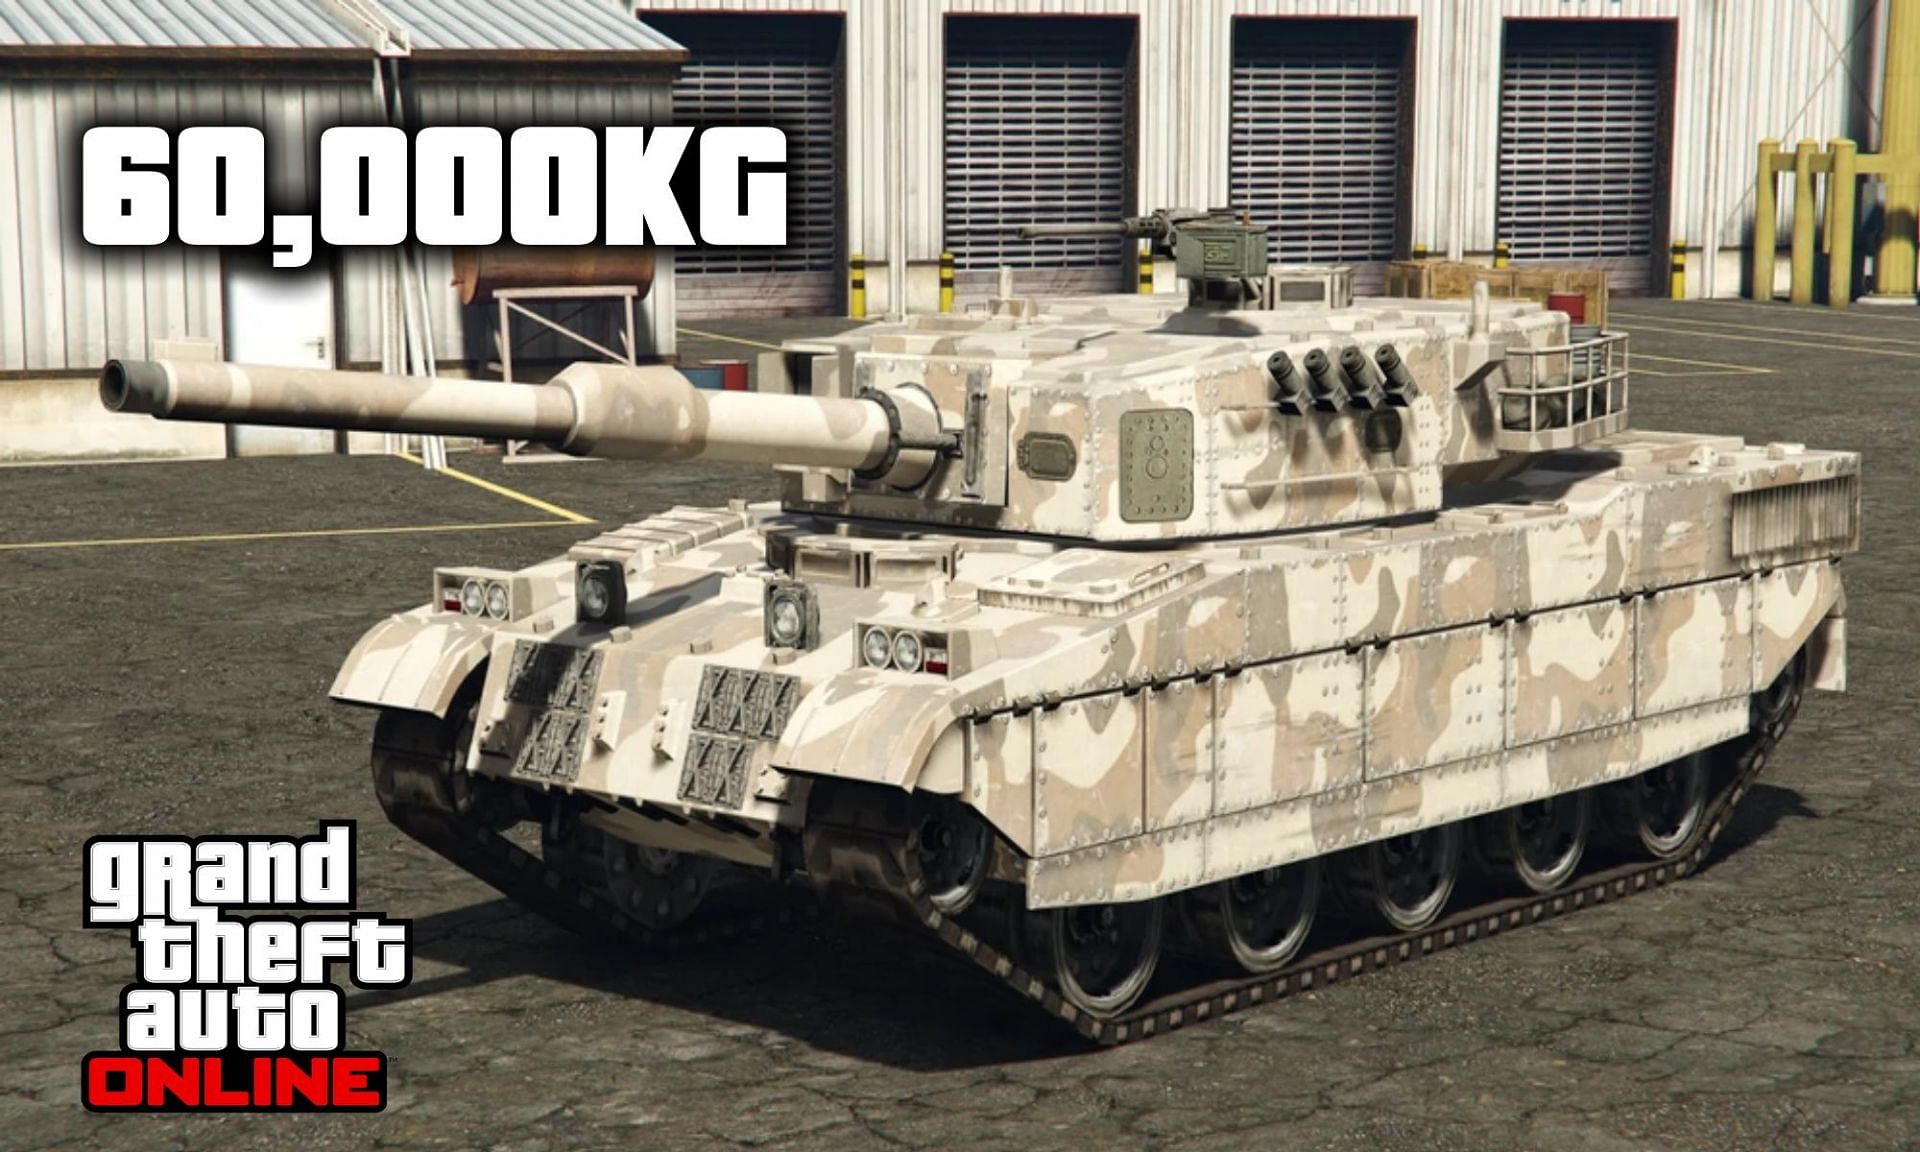 The Rhino tank is the heaviest vehicle in GTA Online (Image via Sportskeeda)